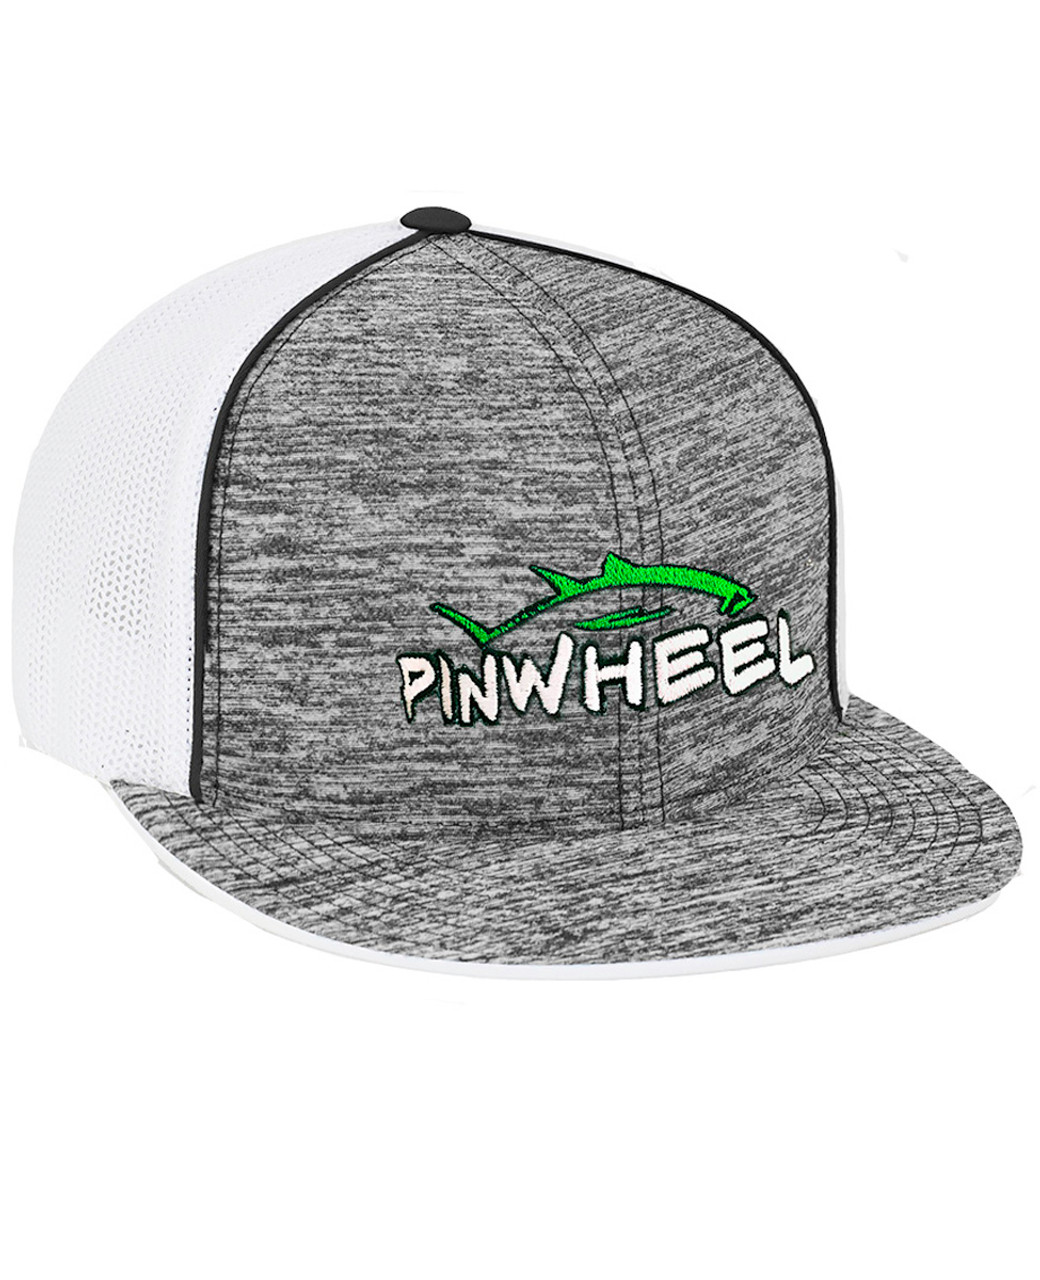 Pinwheel Trucker Mesh Hat - Pinwheel Gear